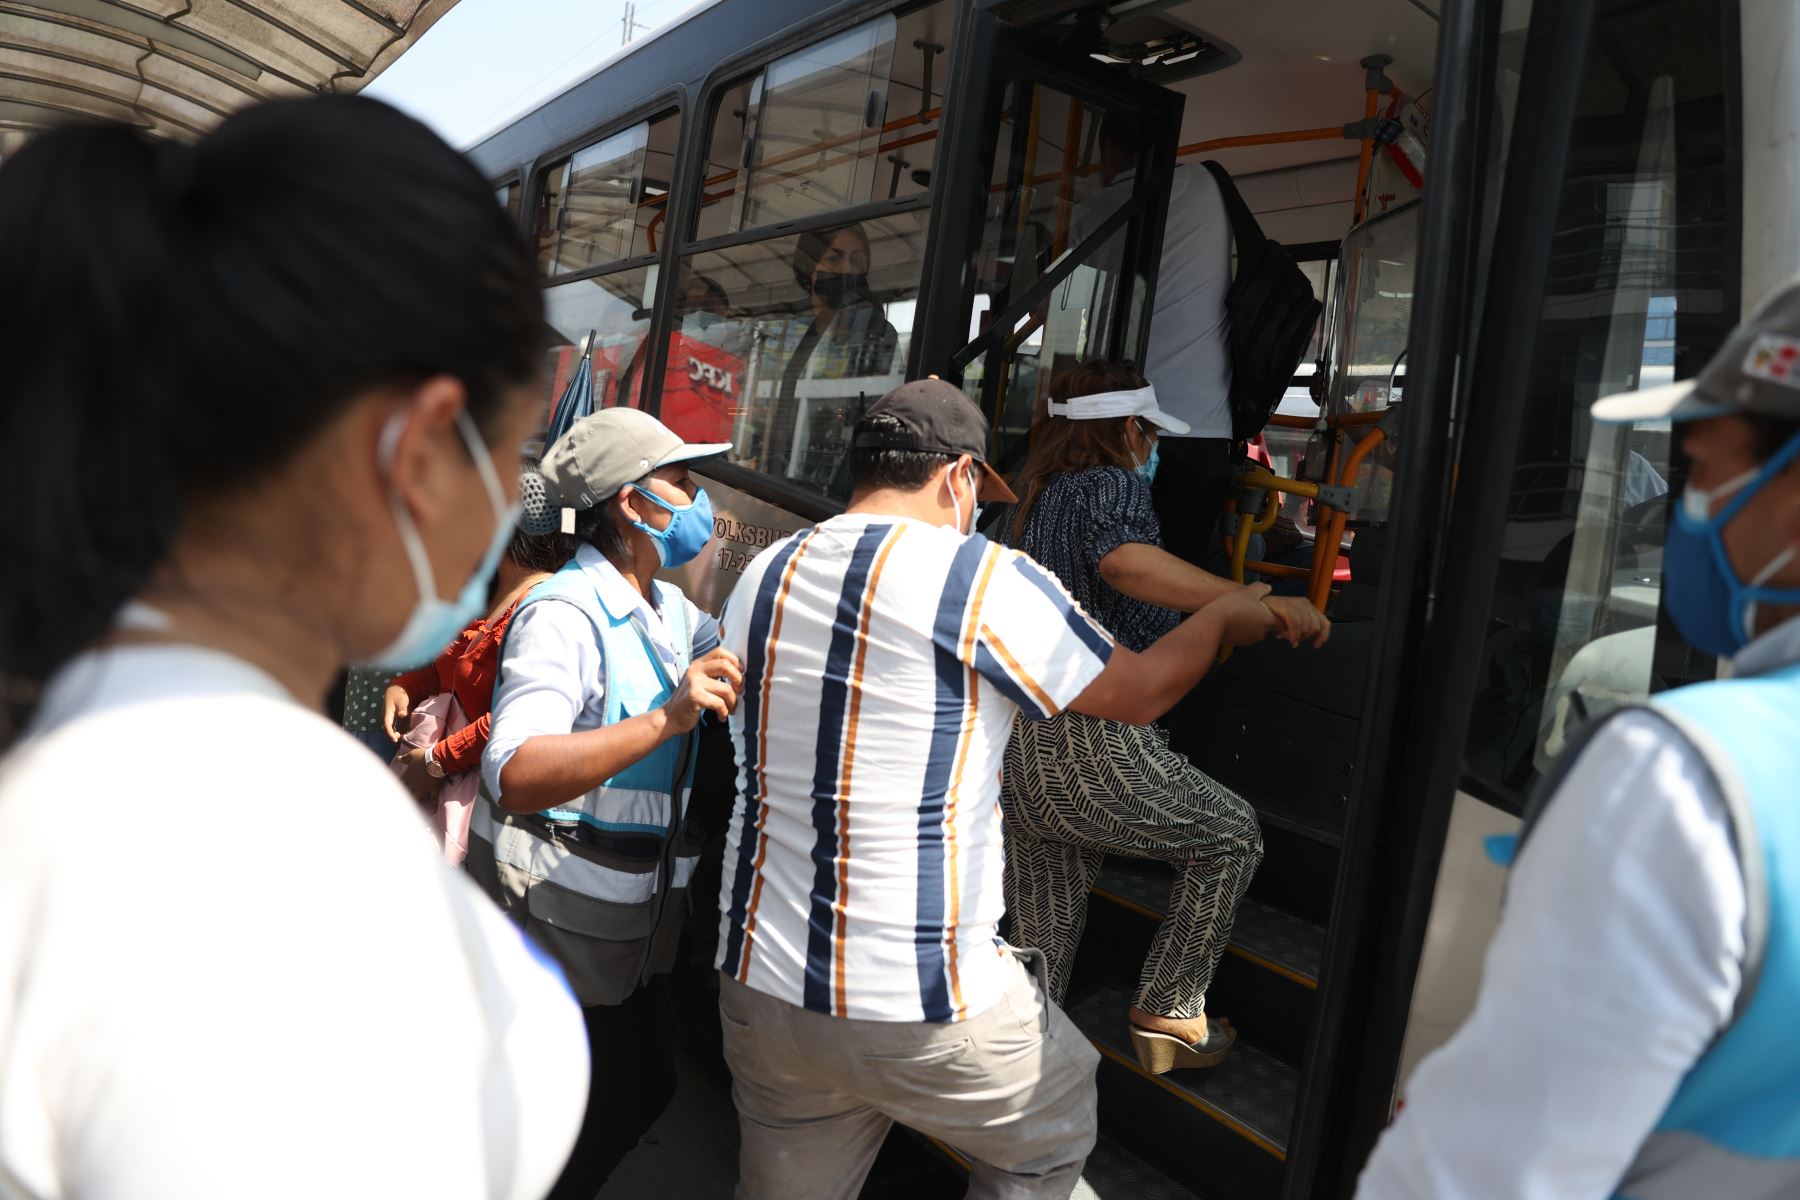 A través de su “Brigada del distanciamiento”, la entidad promueve en varios paraderos de Lima y Callao el cumplimiento de los protocolos sanitarios contra el covid-19. ATU. Foto: ANDINA/Jhonel Rodríguez Robles